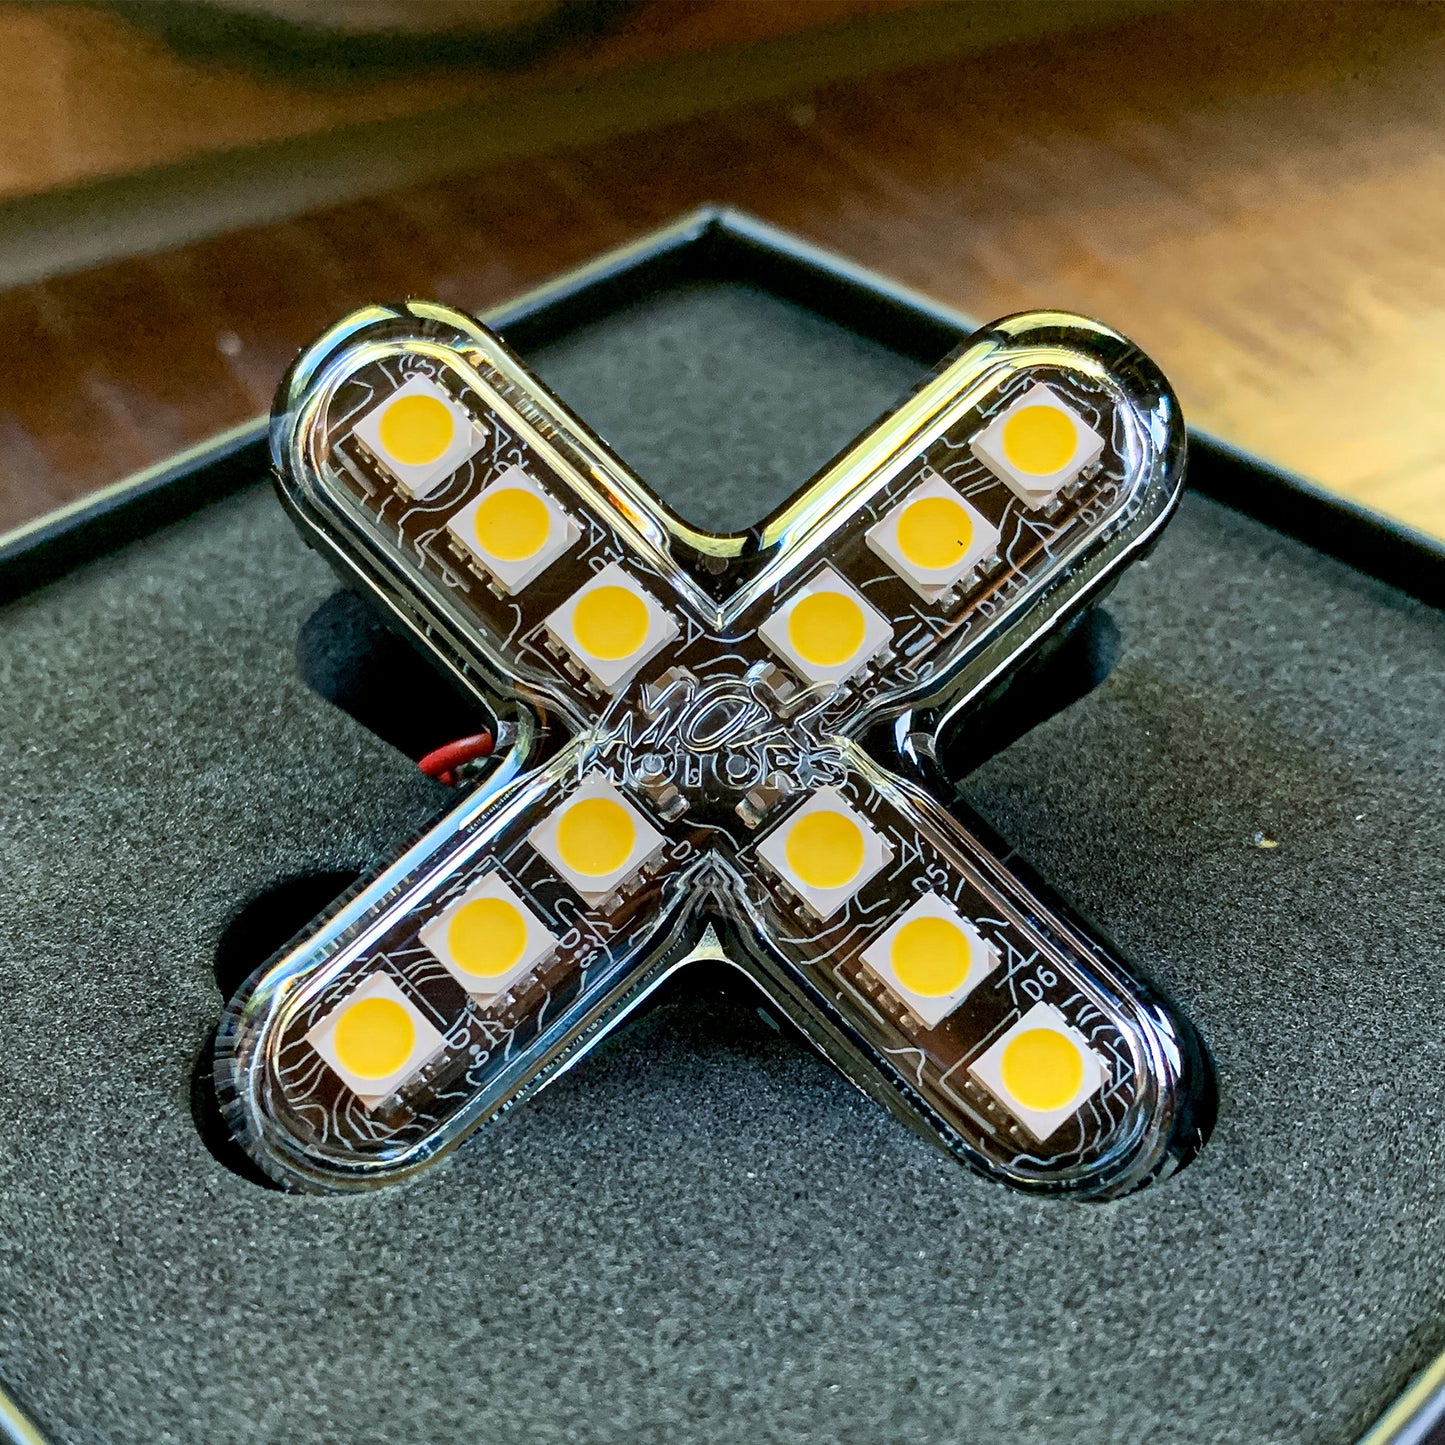 ROX Light - Mox Motors Rock Light